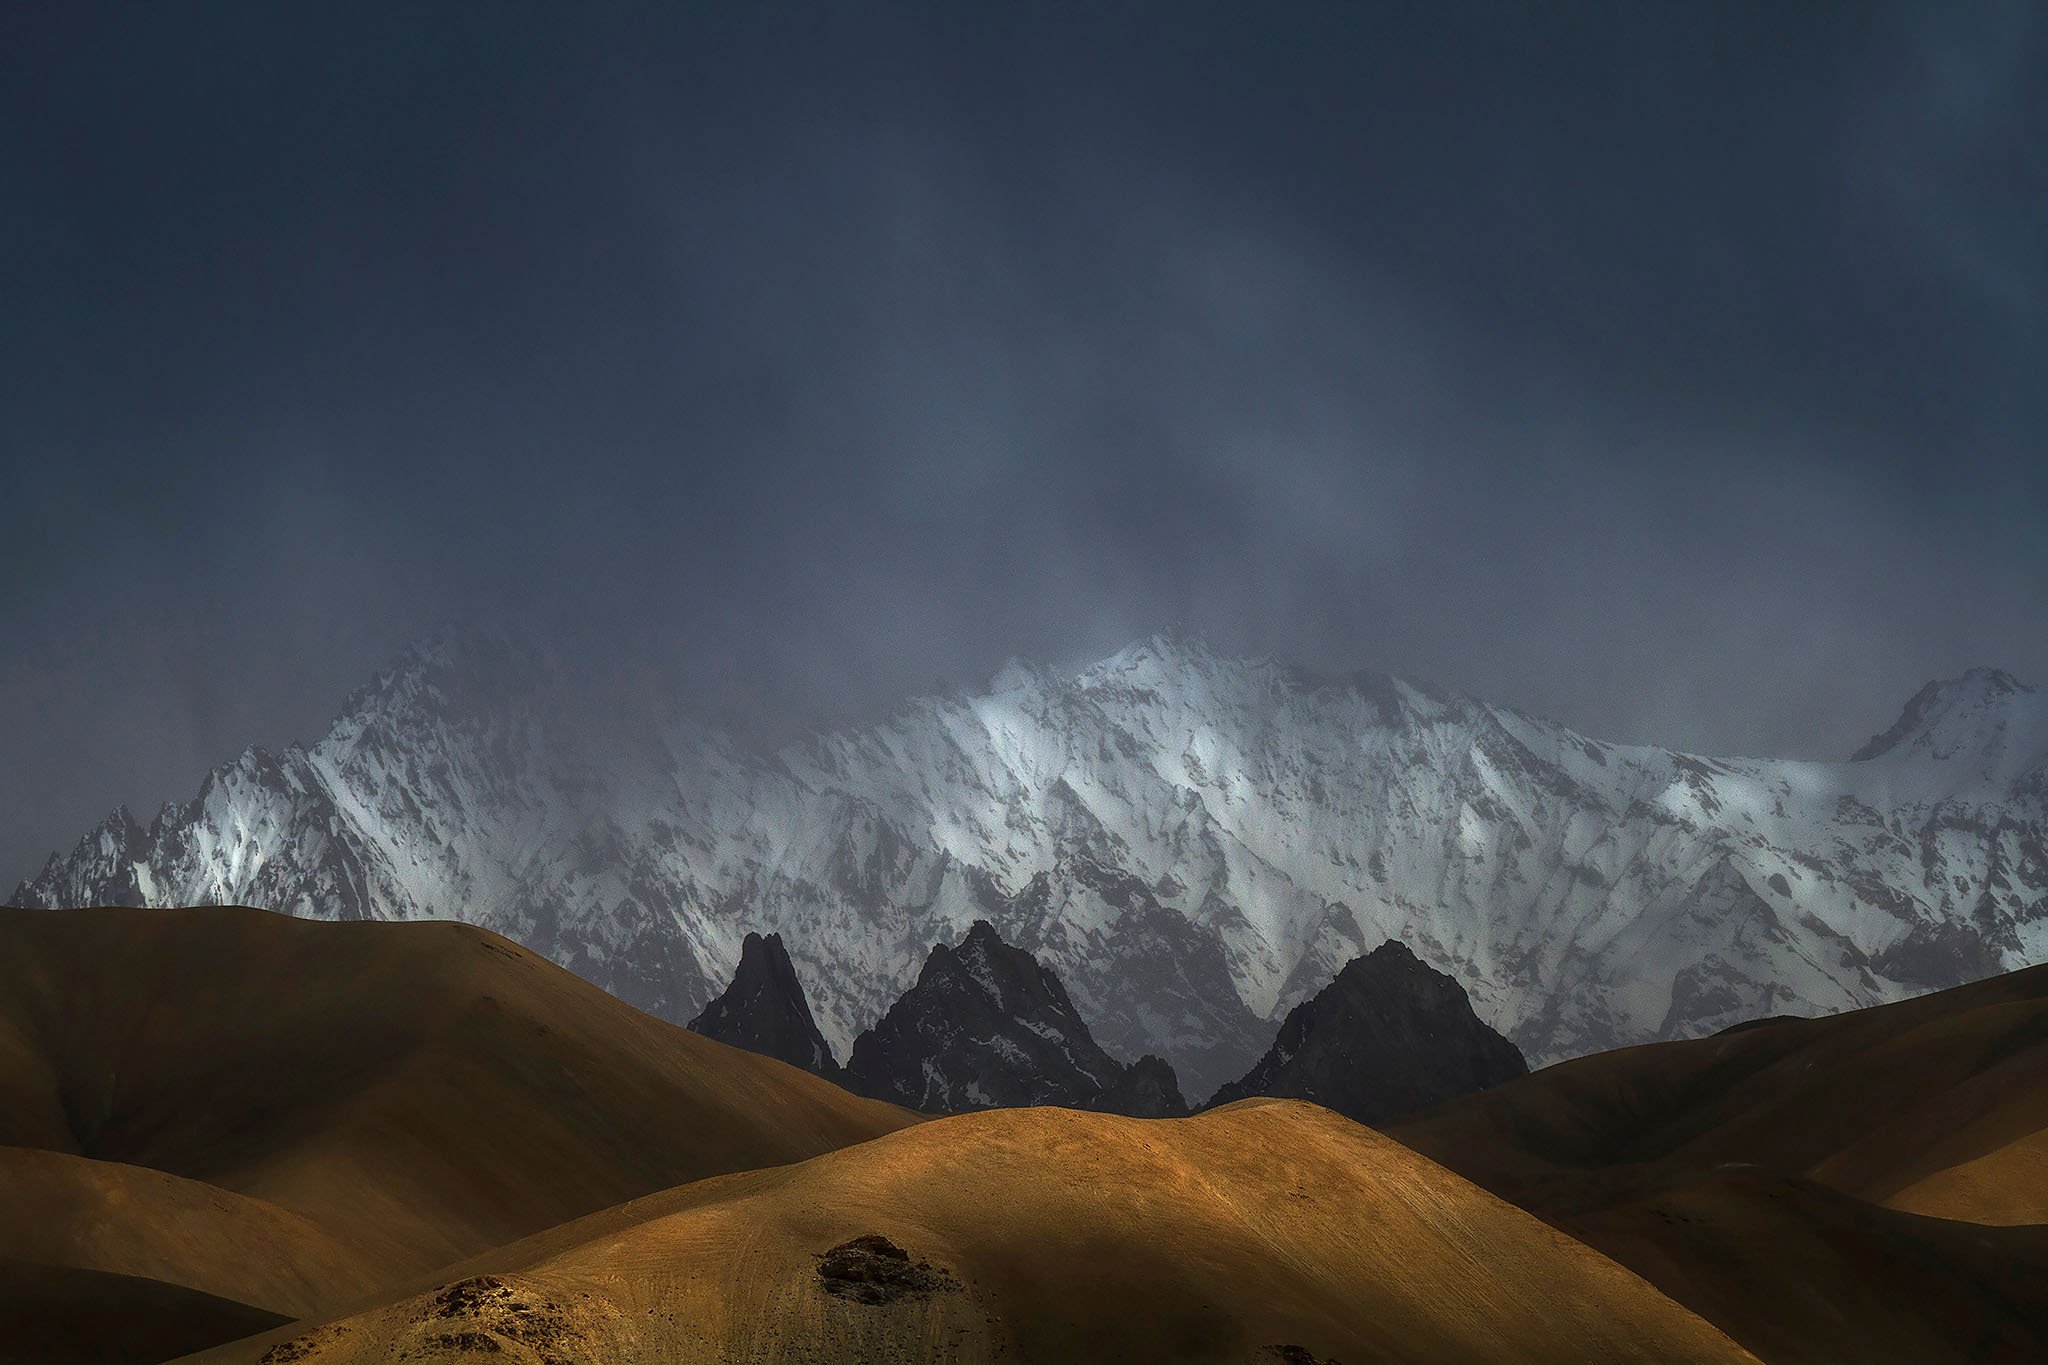 ws_la_banner_ladakh_LalitDeshmukh_LadakhMountains brightened shadows.jpg